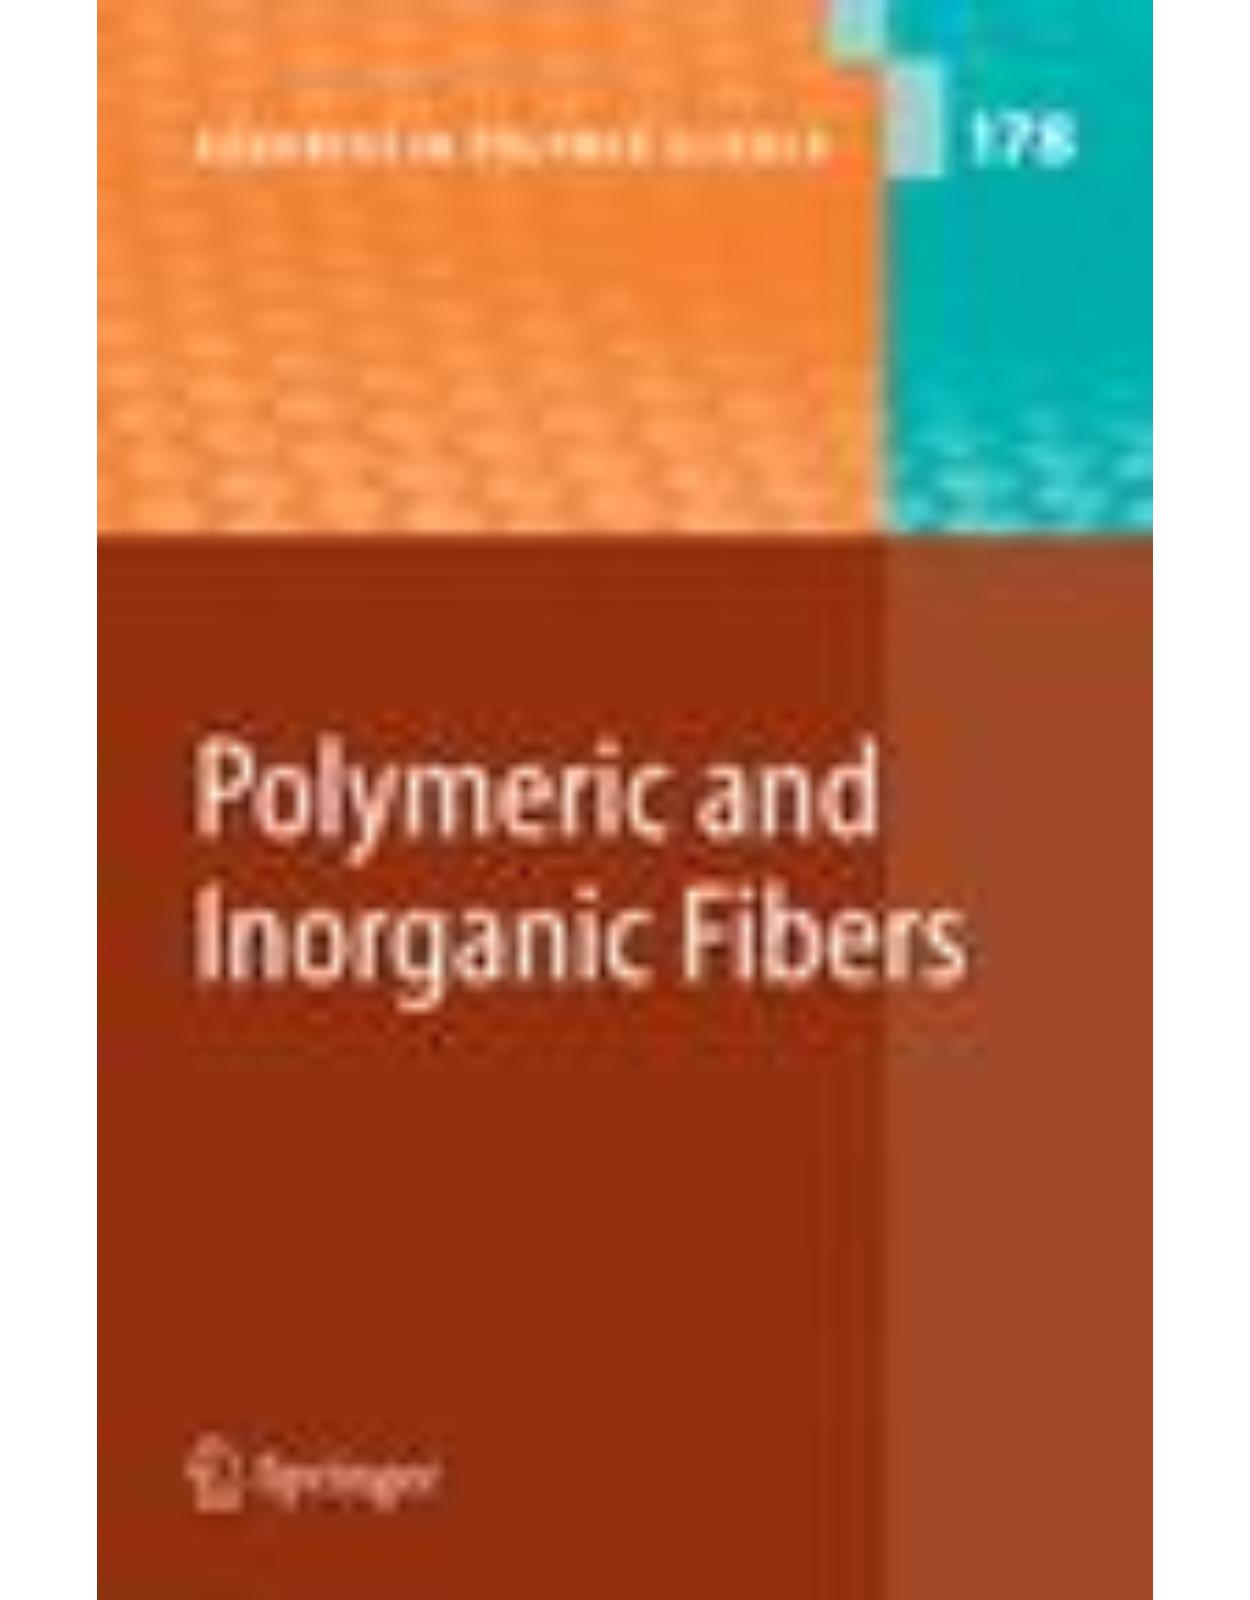 Polymeric and Inorganic Fibers